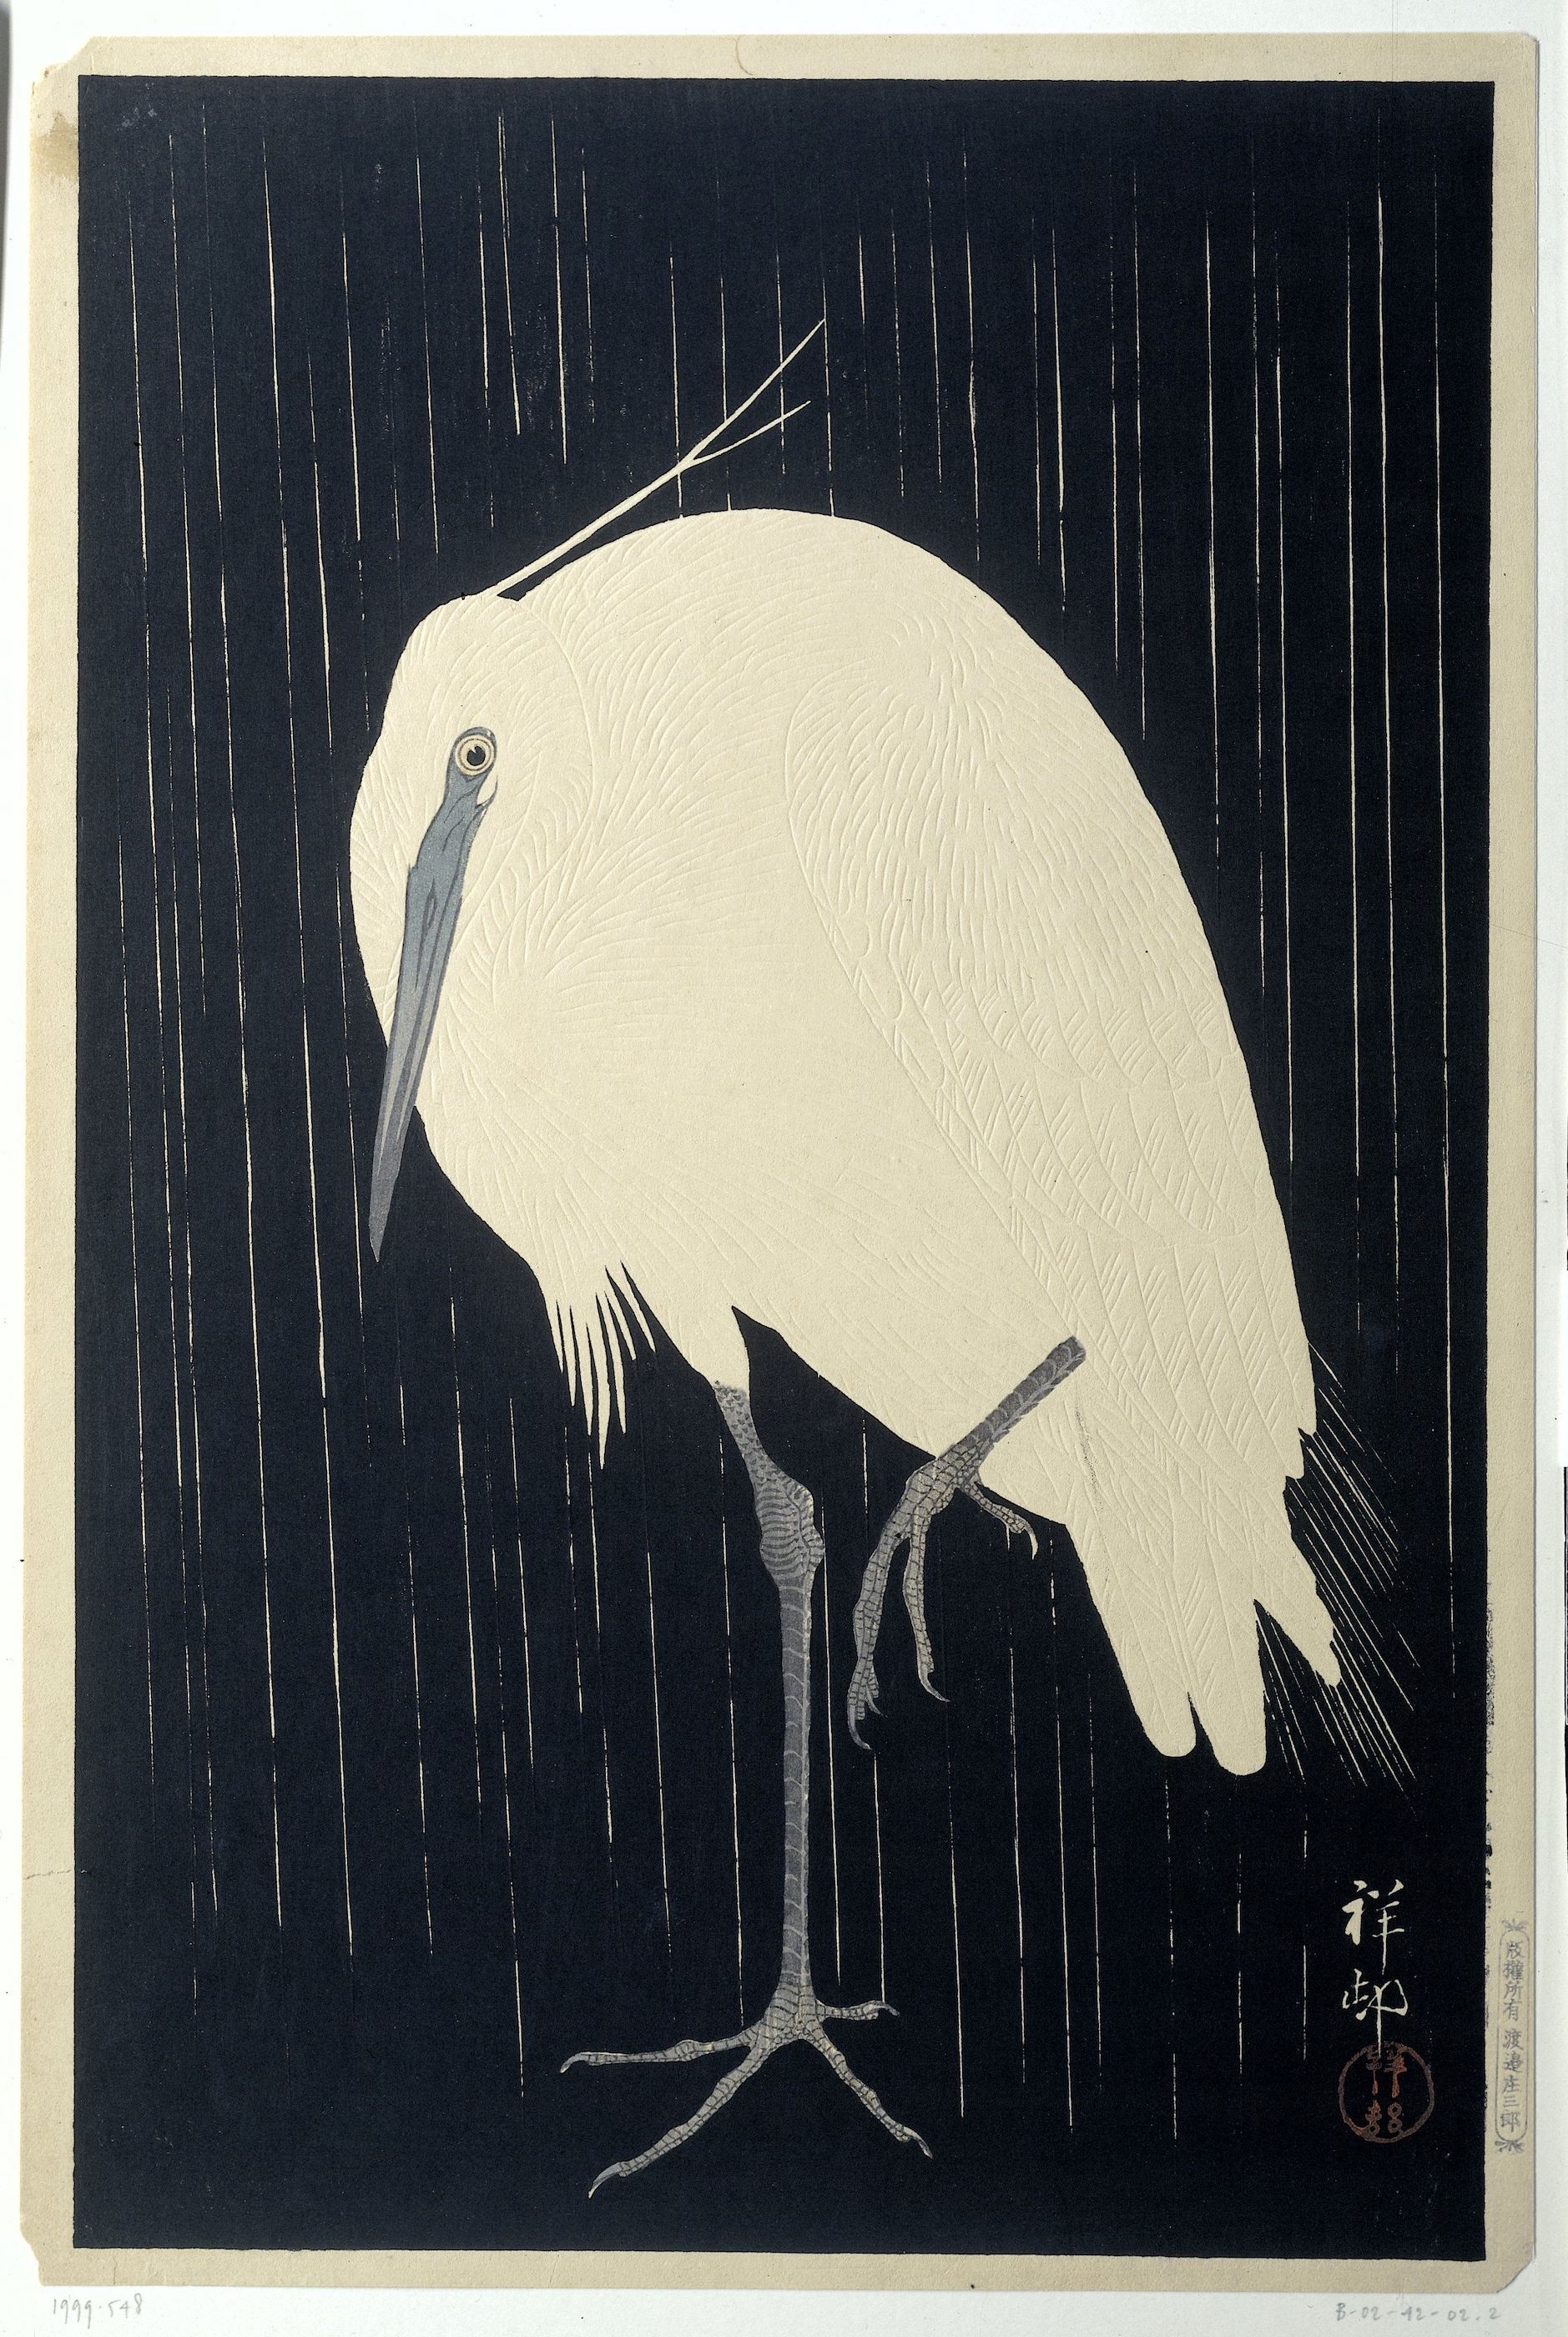 Garza bajo la lluvia by Ohara Koson - 1928 - 36.3 × 24.1 cm Instituto de Arte de Chicago